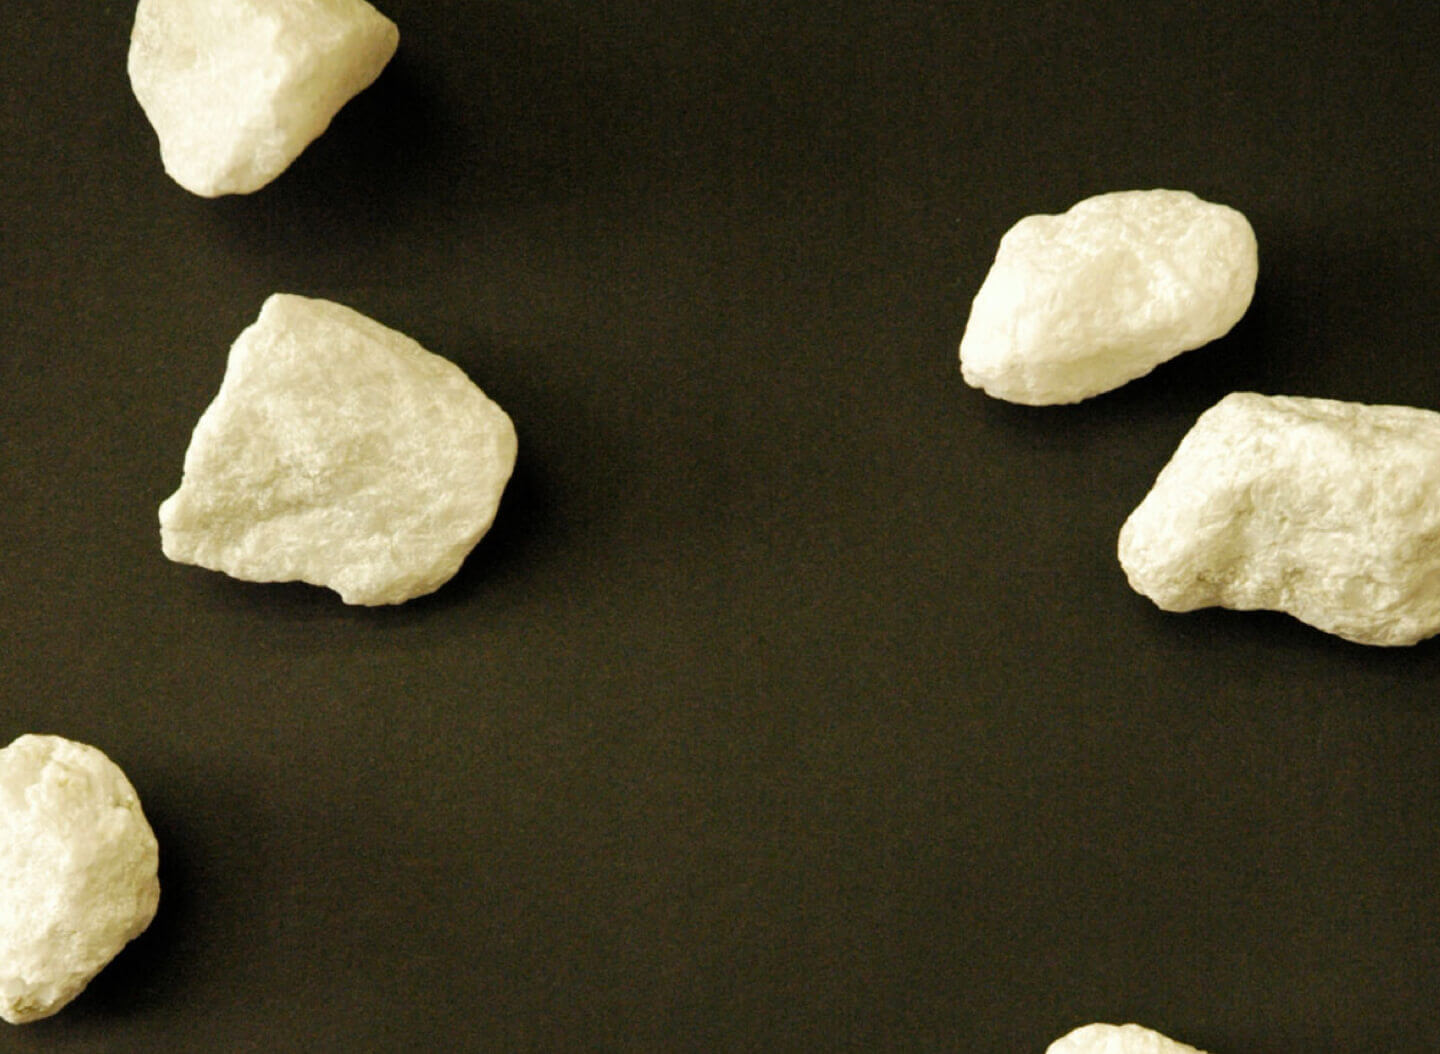 Cream Co. image of several small white rocks